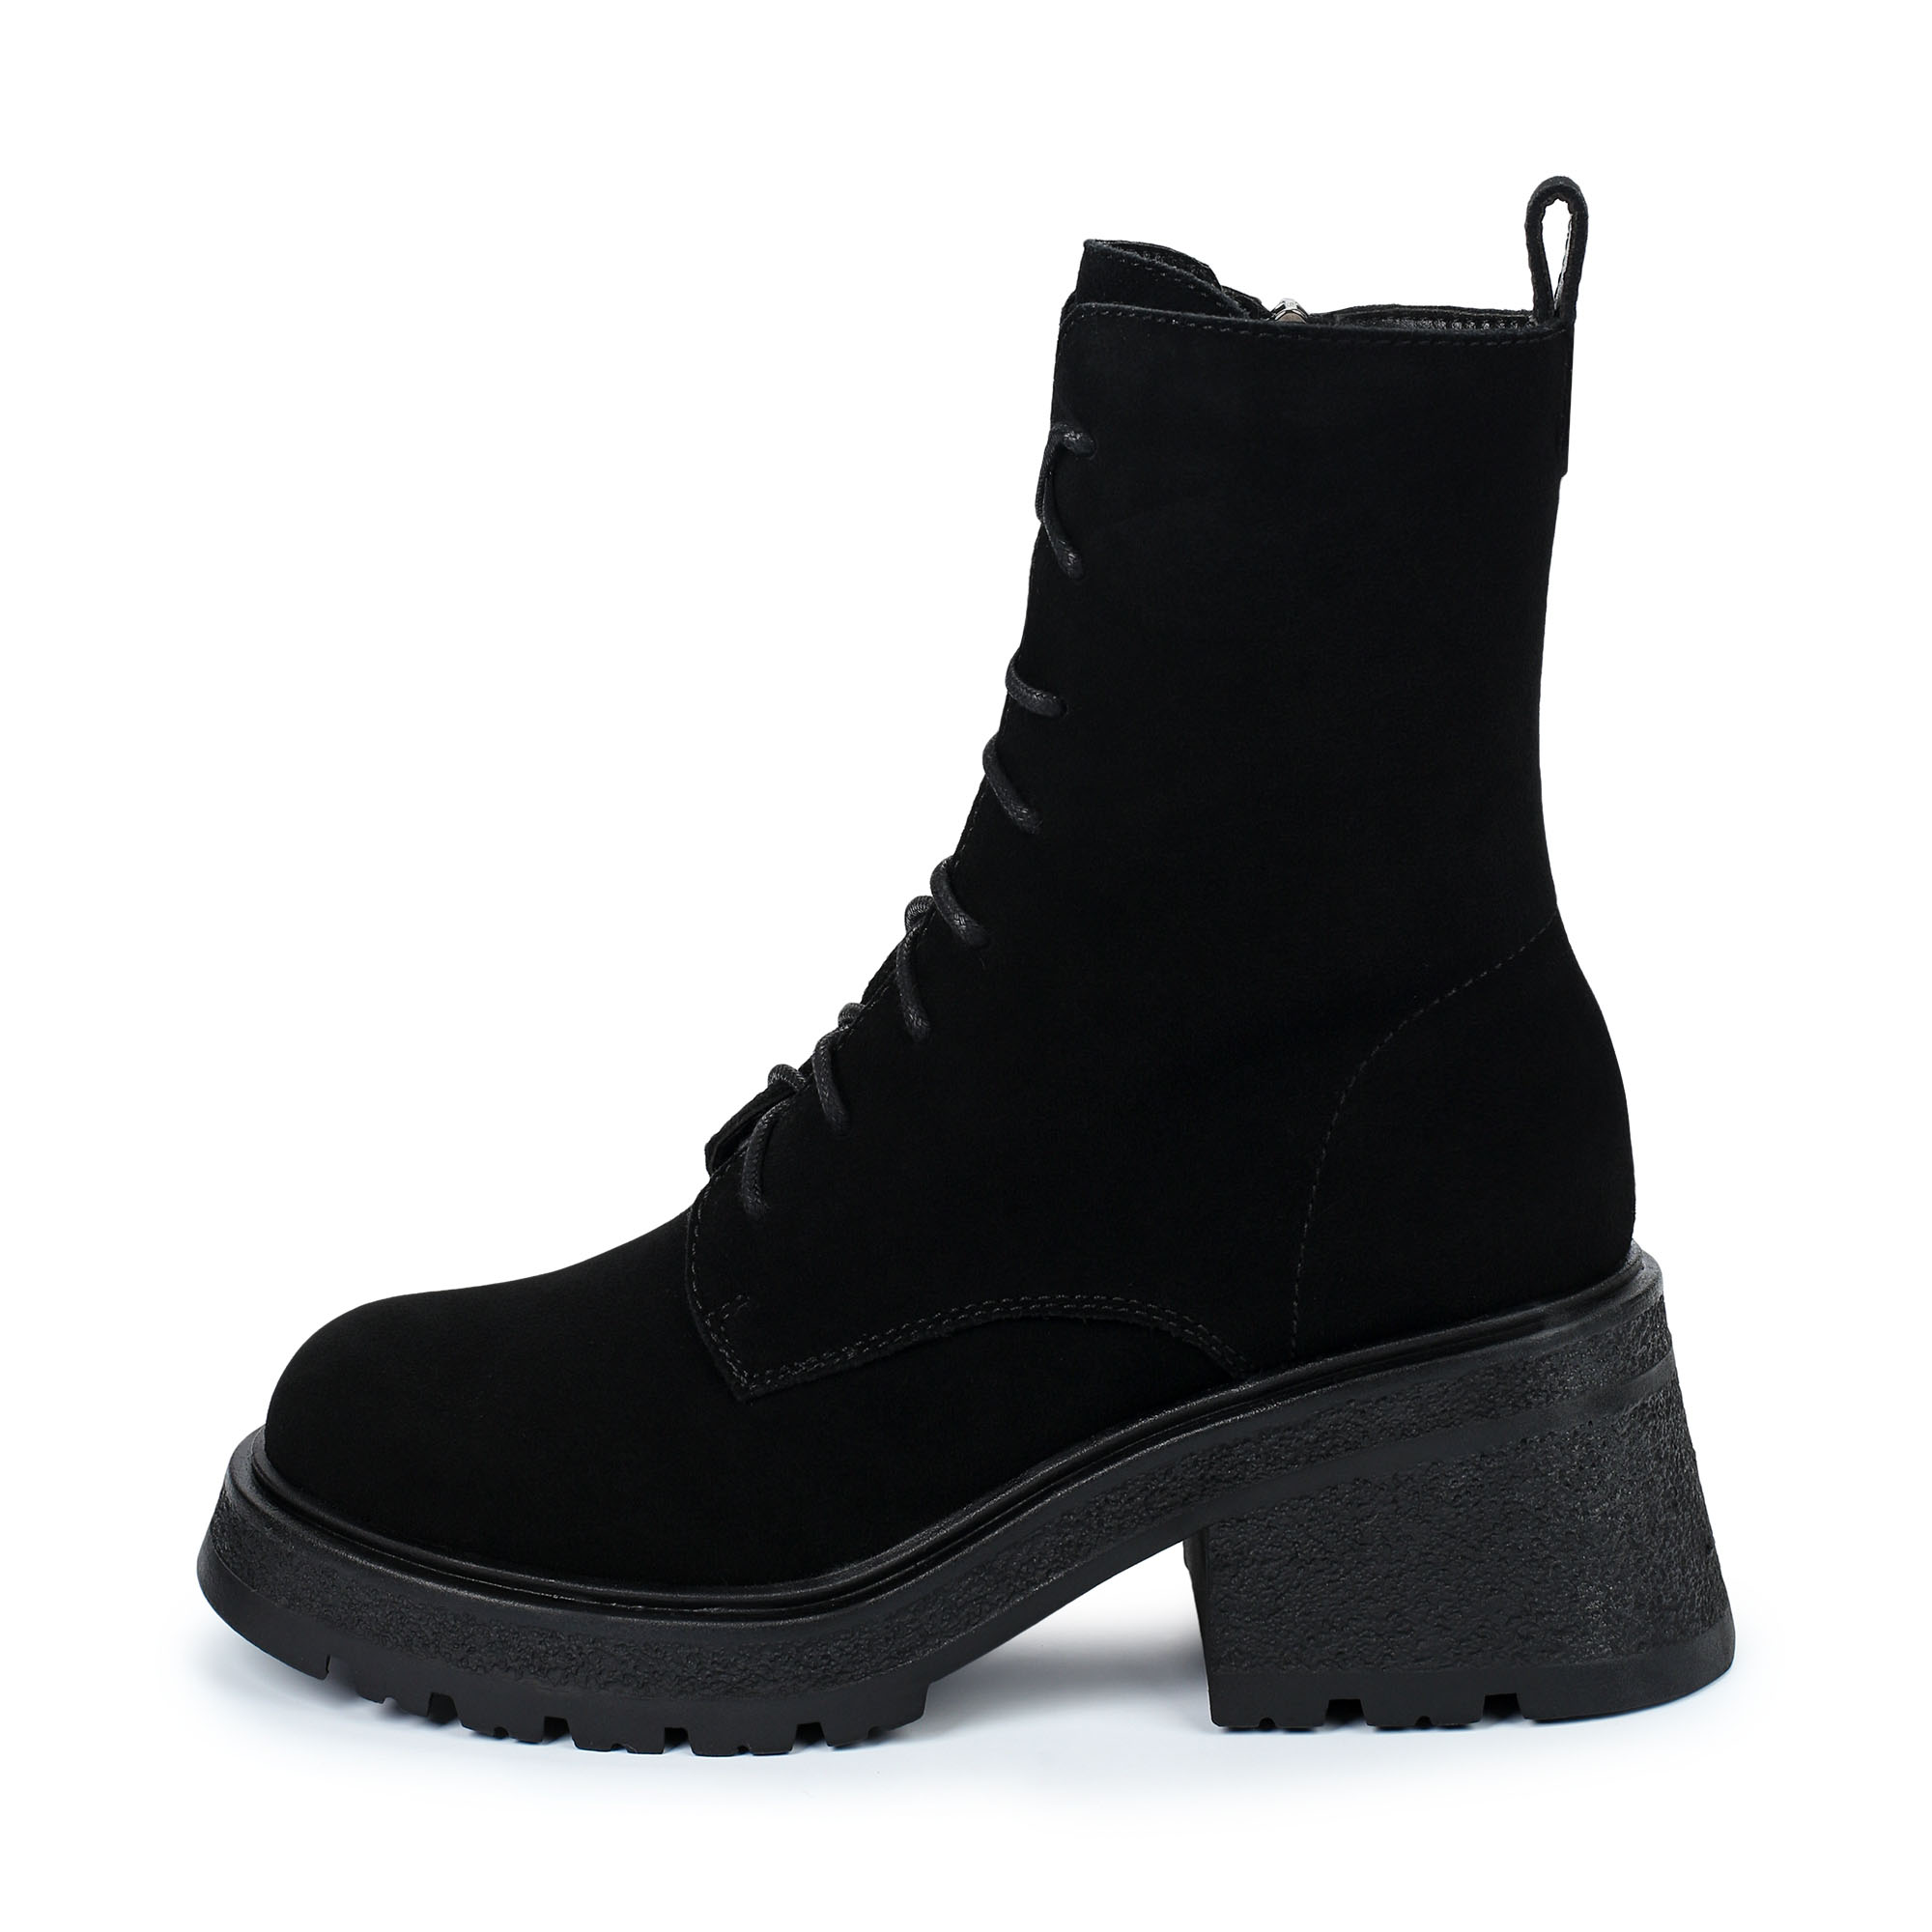 Ботинки Thomas Munz 021-001A-50202, цвет черный, размер 39